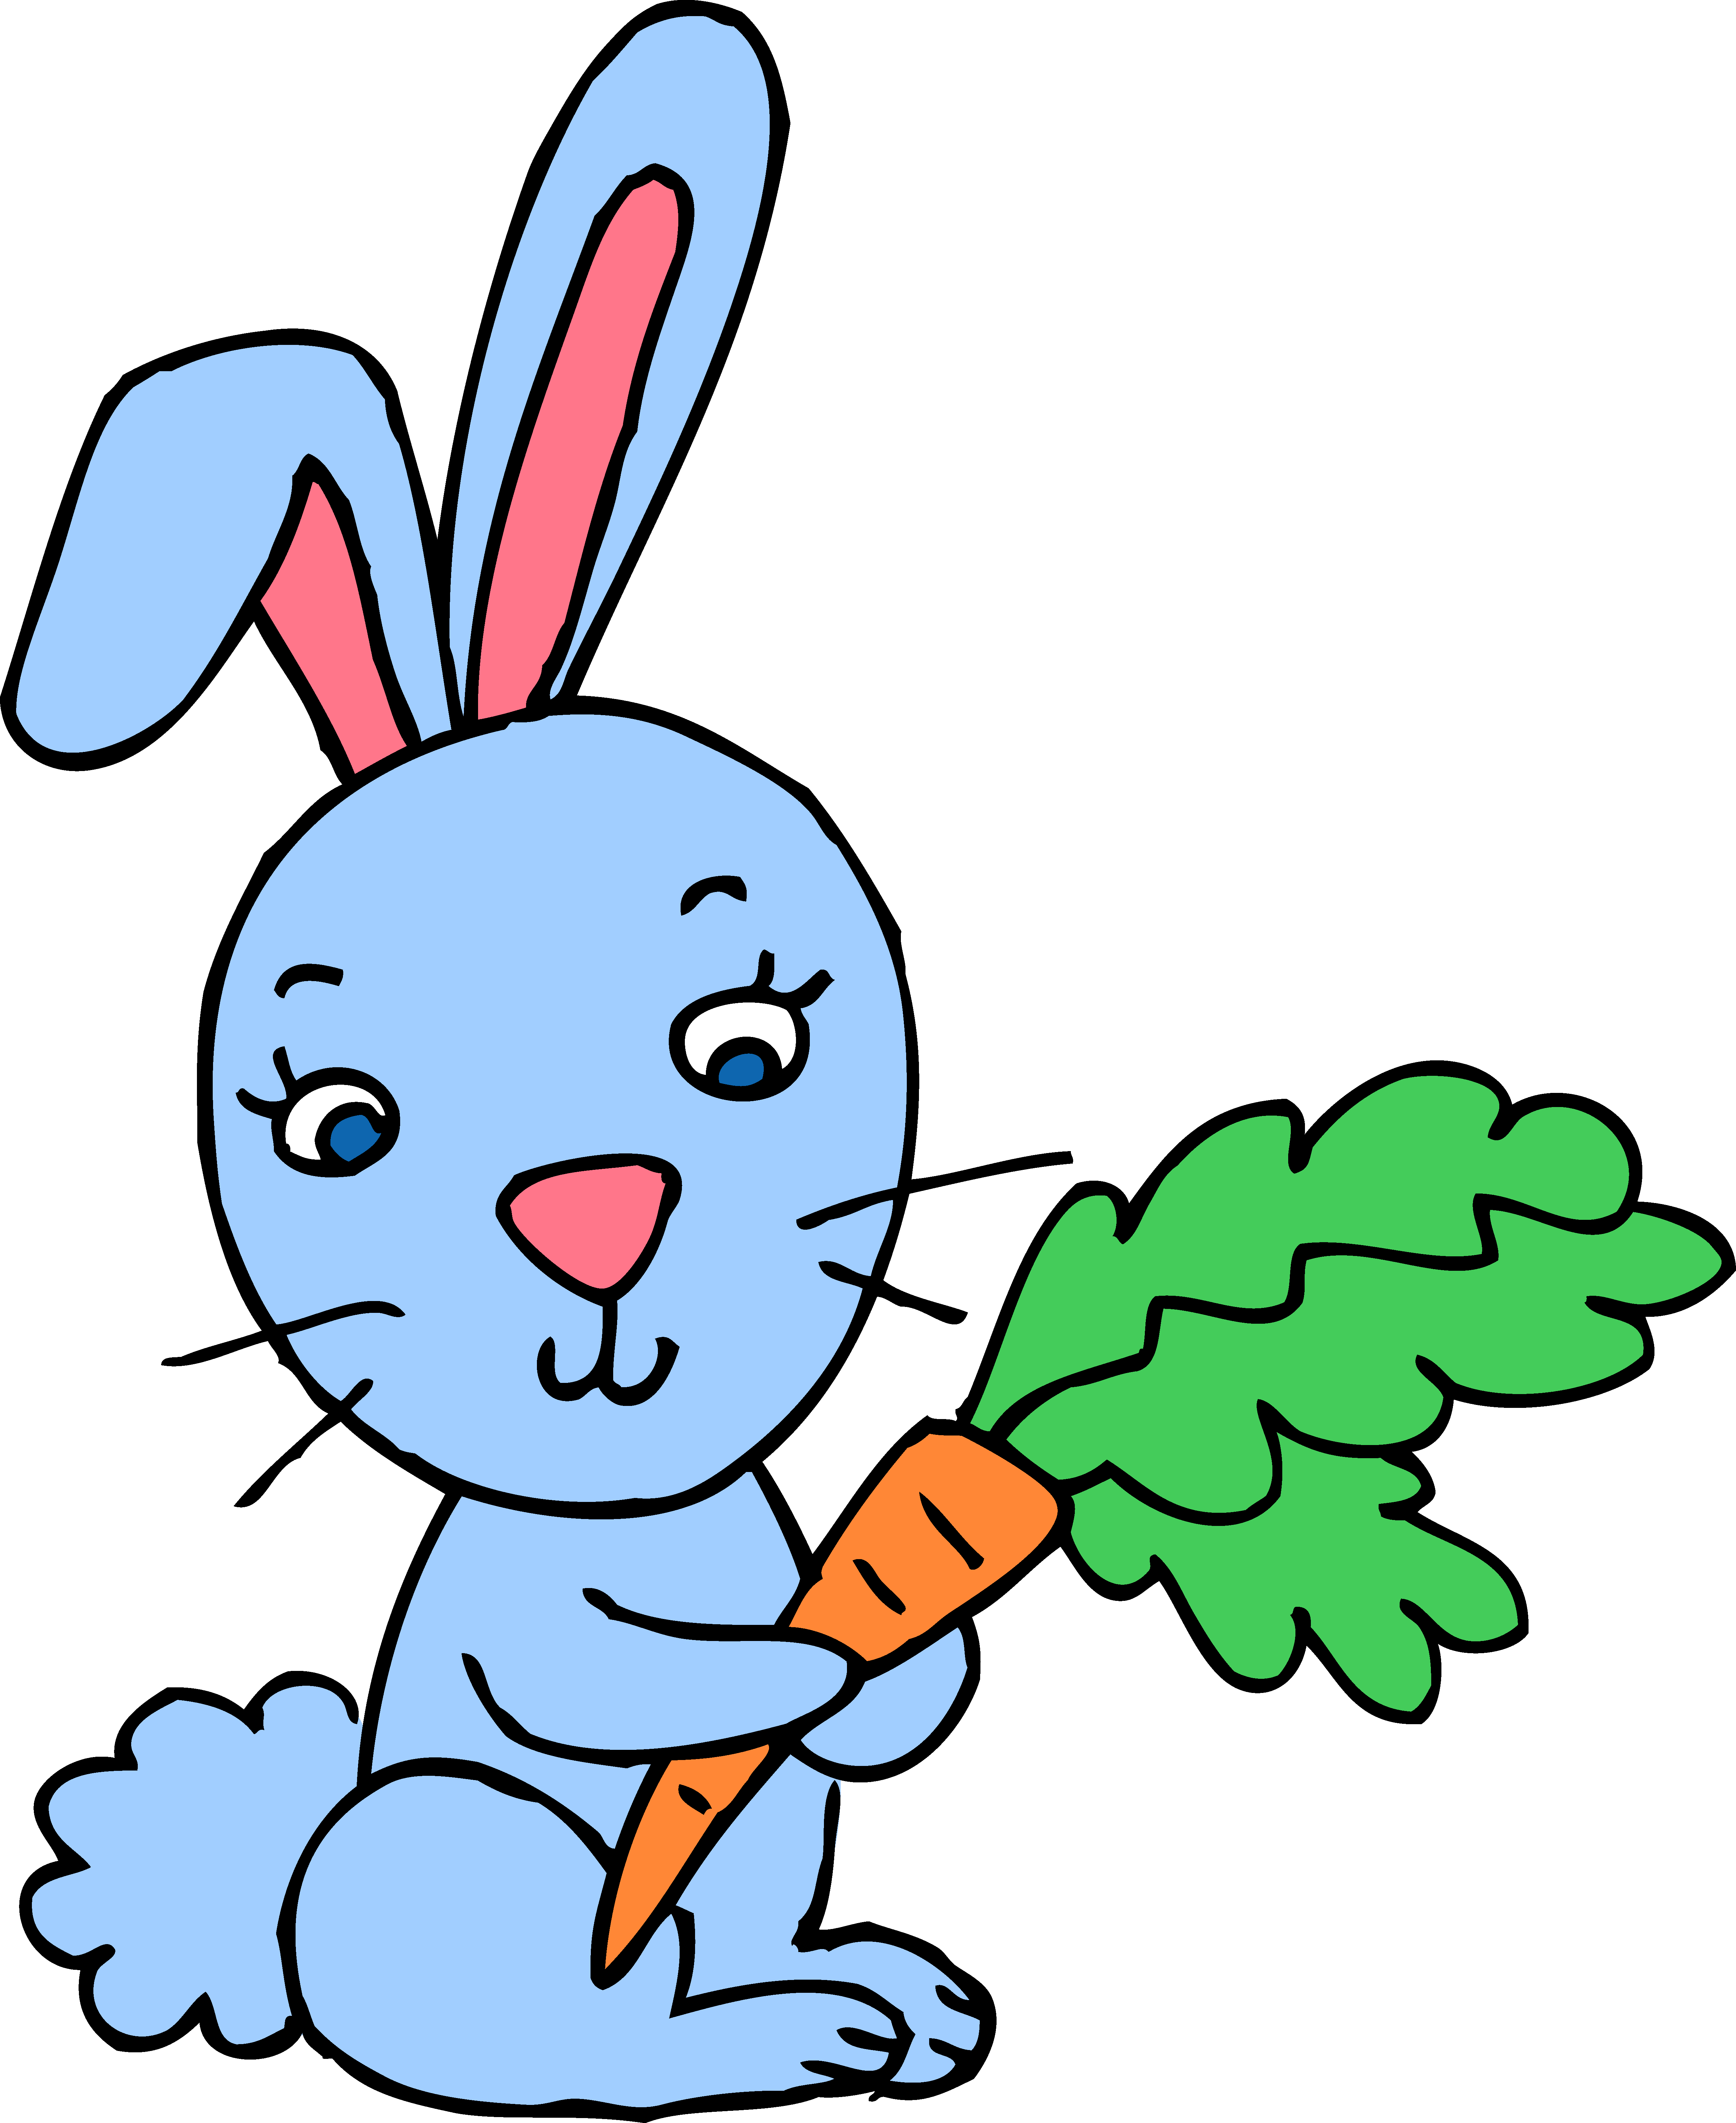 Заяц картинки нарисованные. Рэббит заяц. Пинк рэббит кролик. Заяц рисунок для детей. Зайчик картинка для детей.